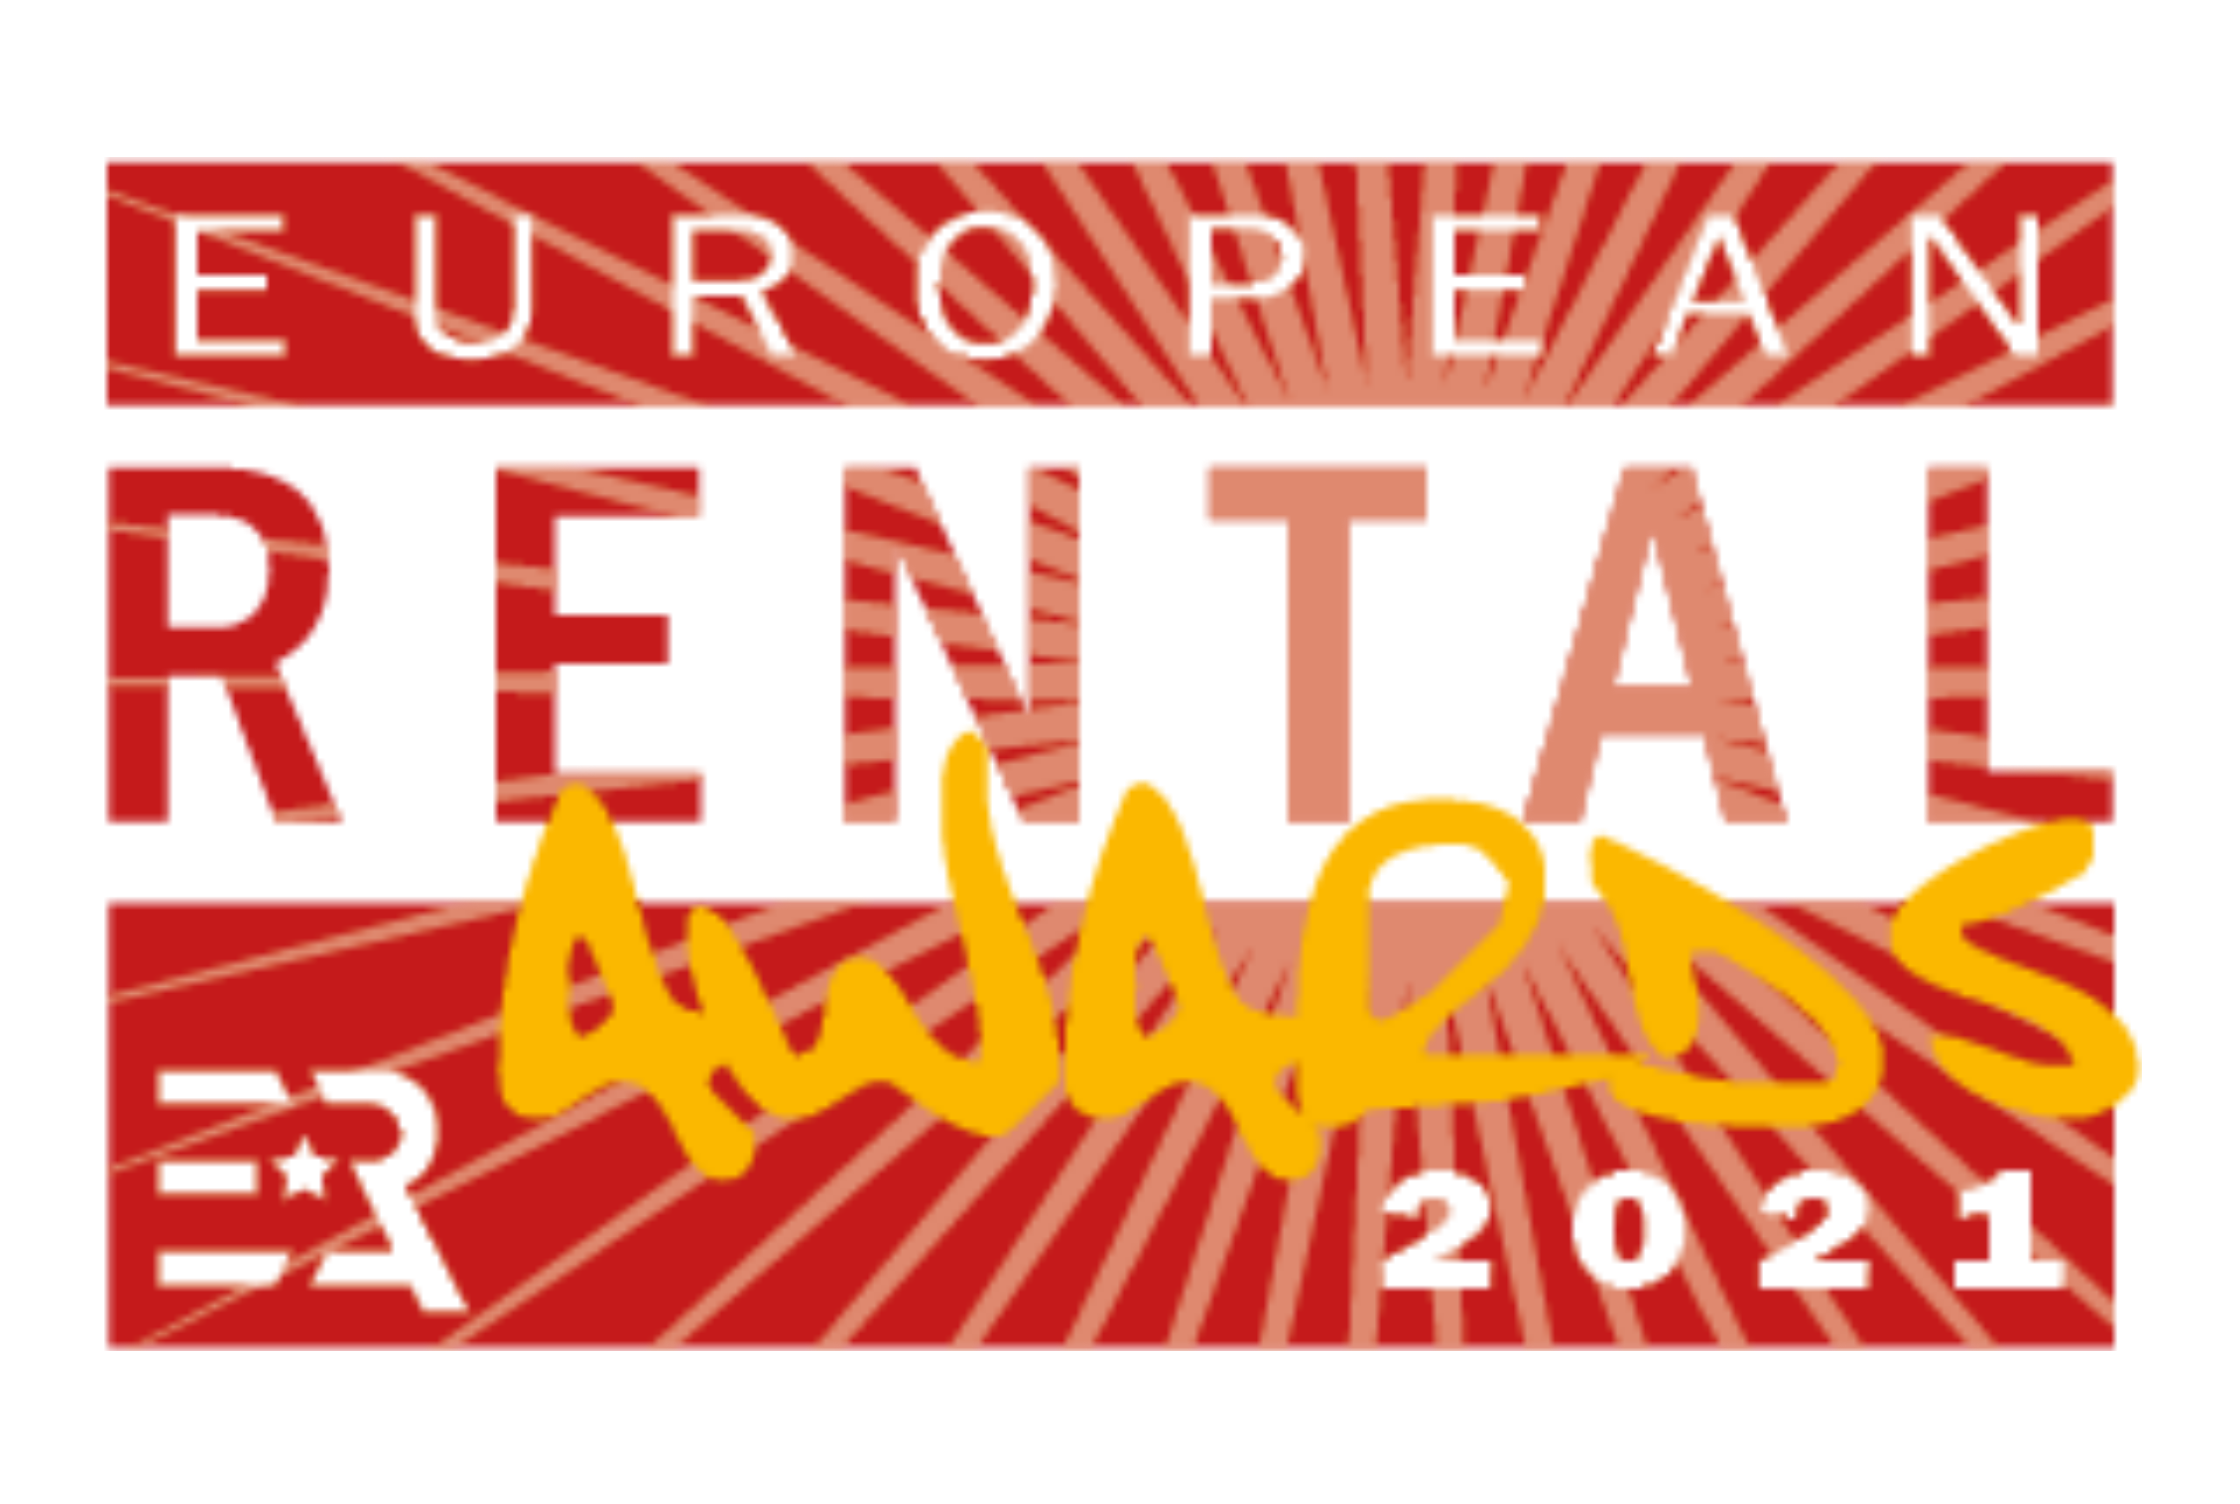 2021 European Rental Awards